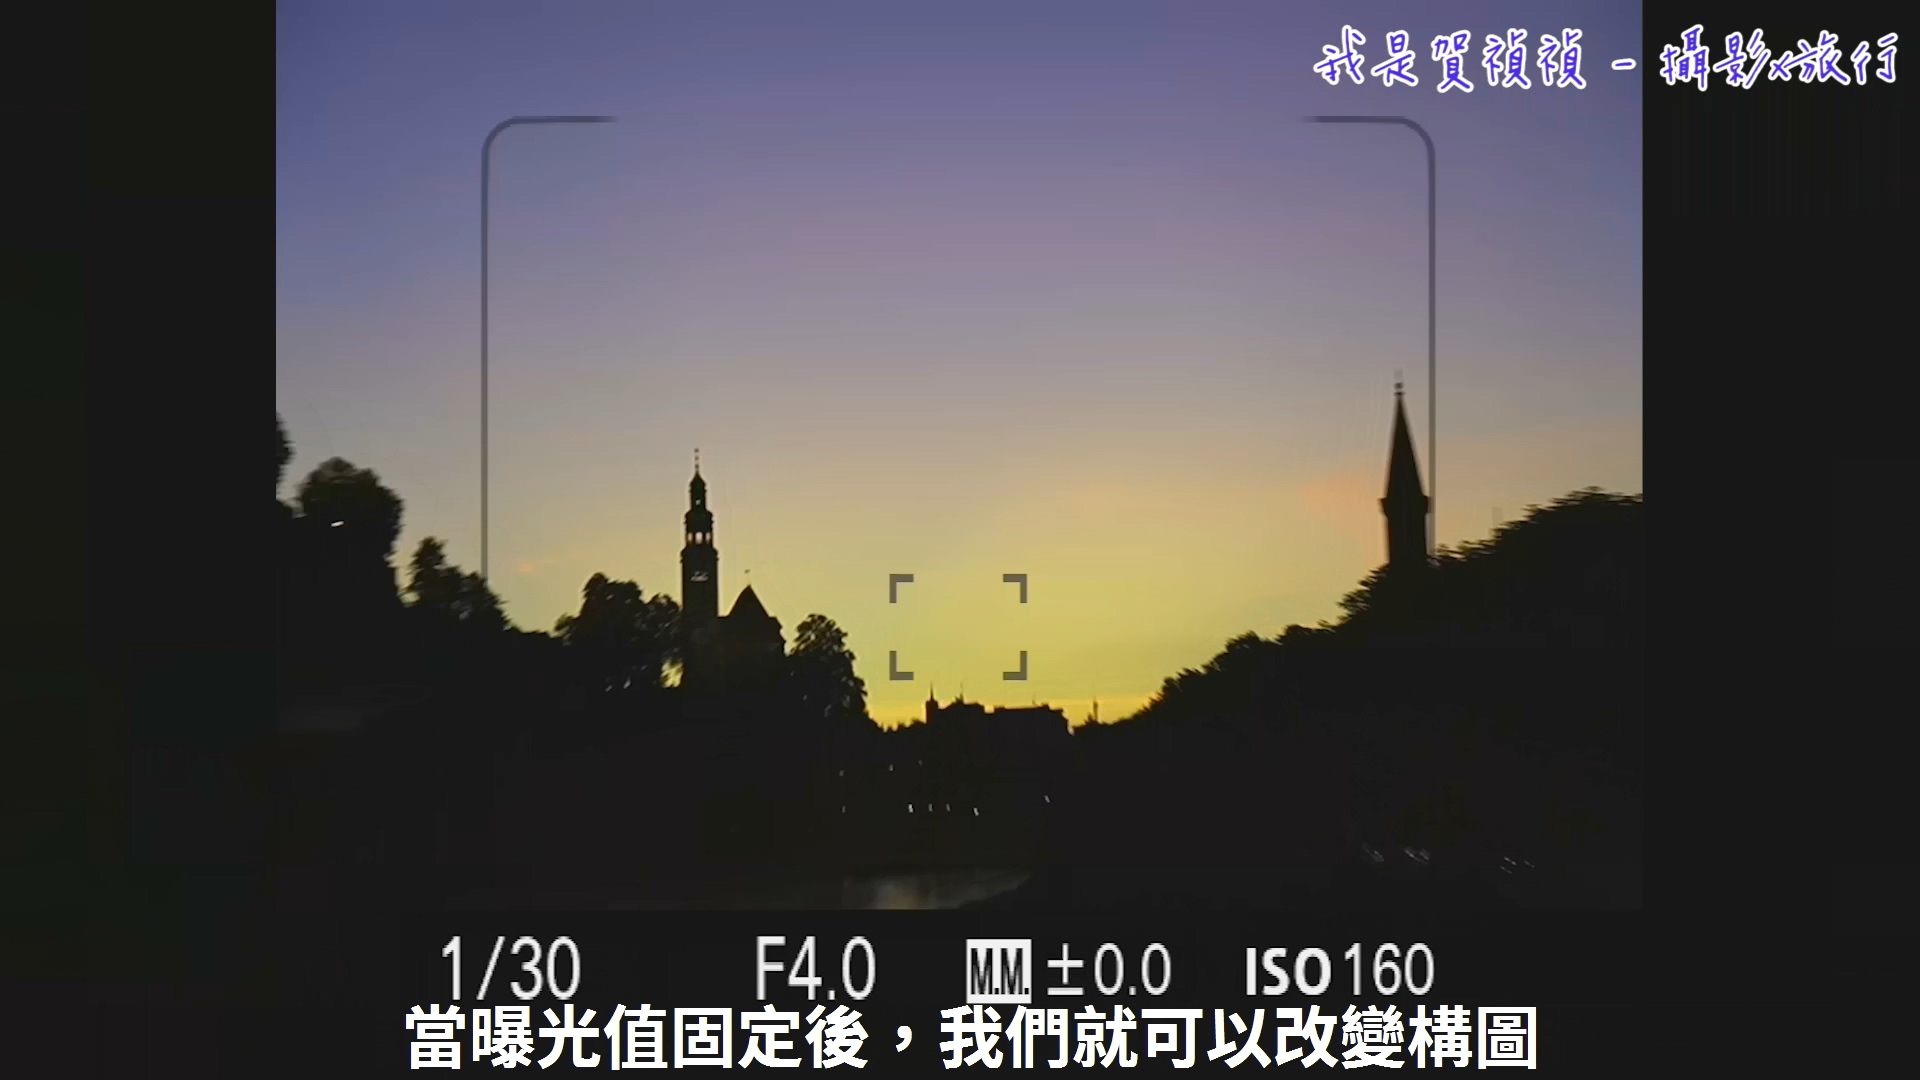 [用攝影119] 手持相機拍攝夜景基本概念 - 快門與感光度的搭配選擇